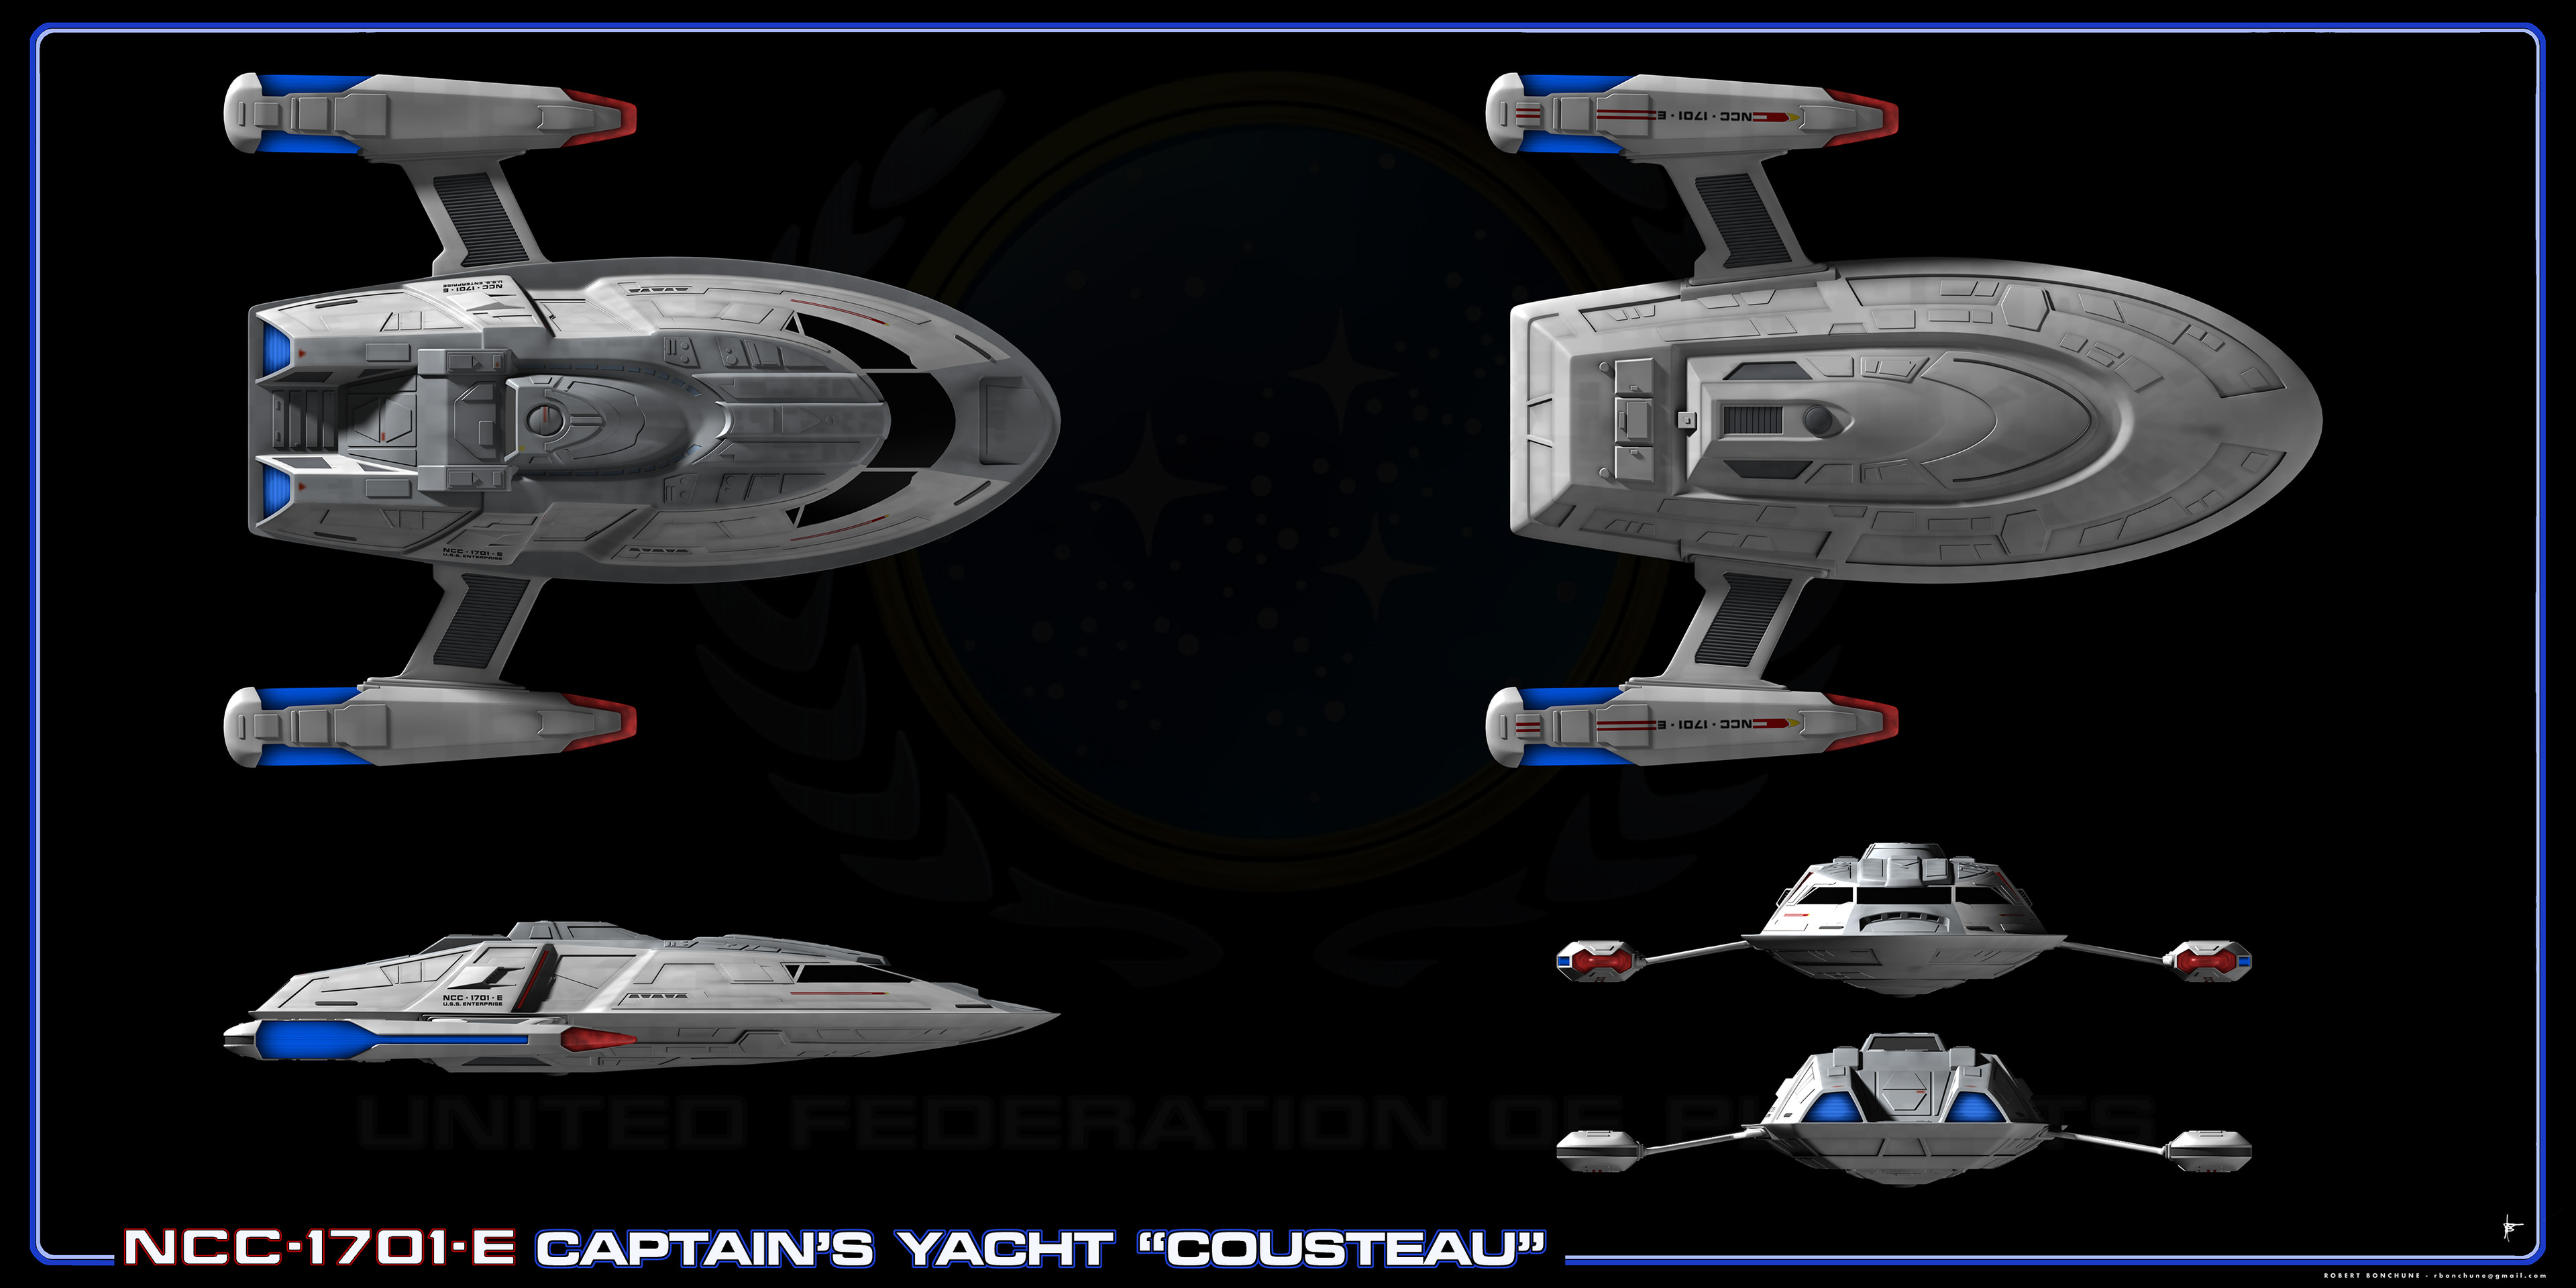 star trek insurrection captain's yacht